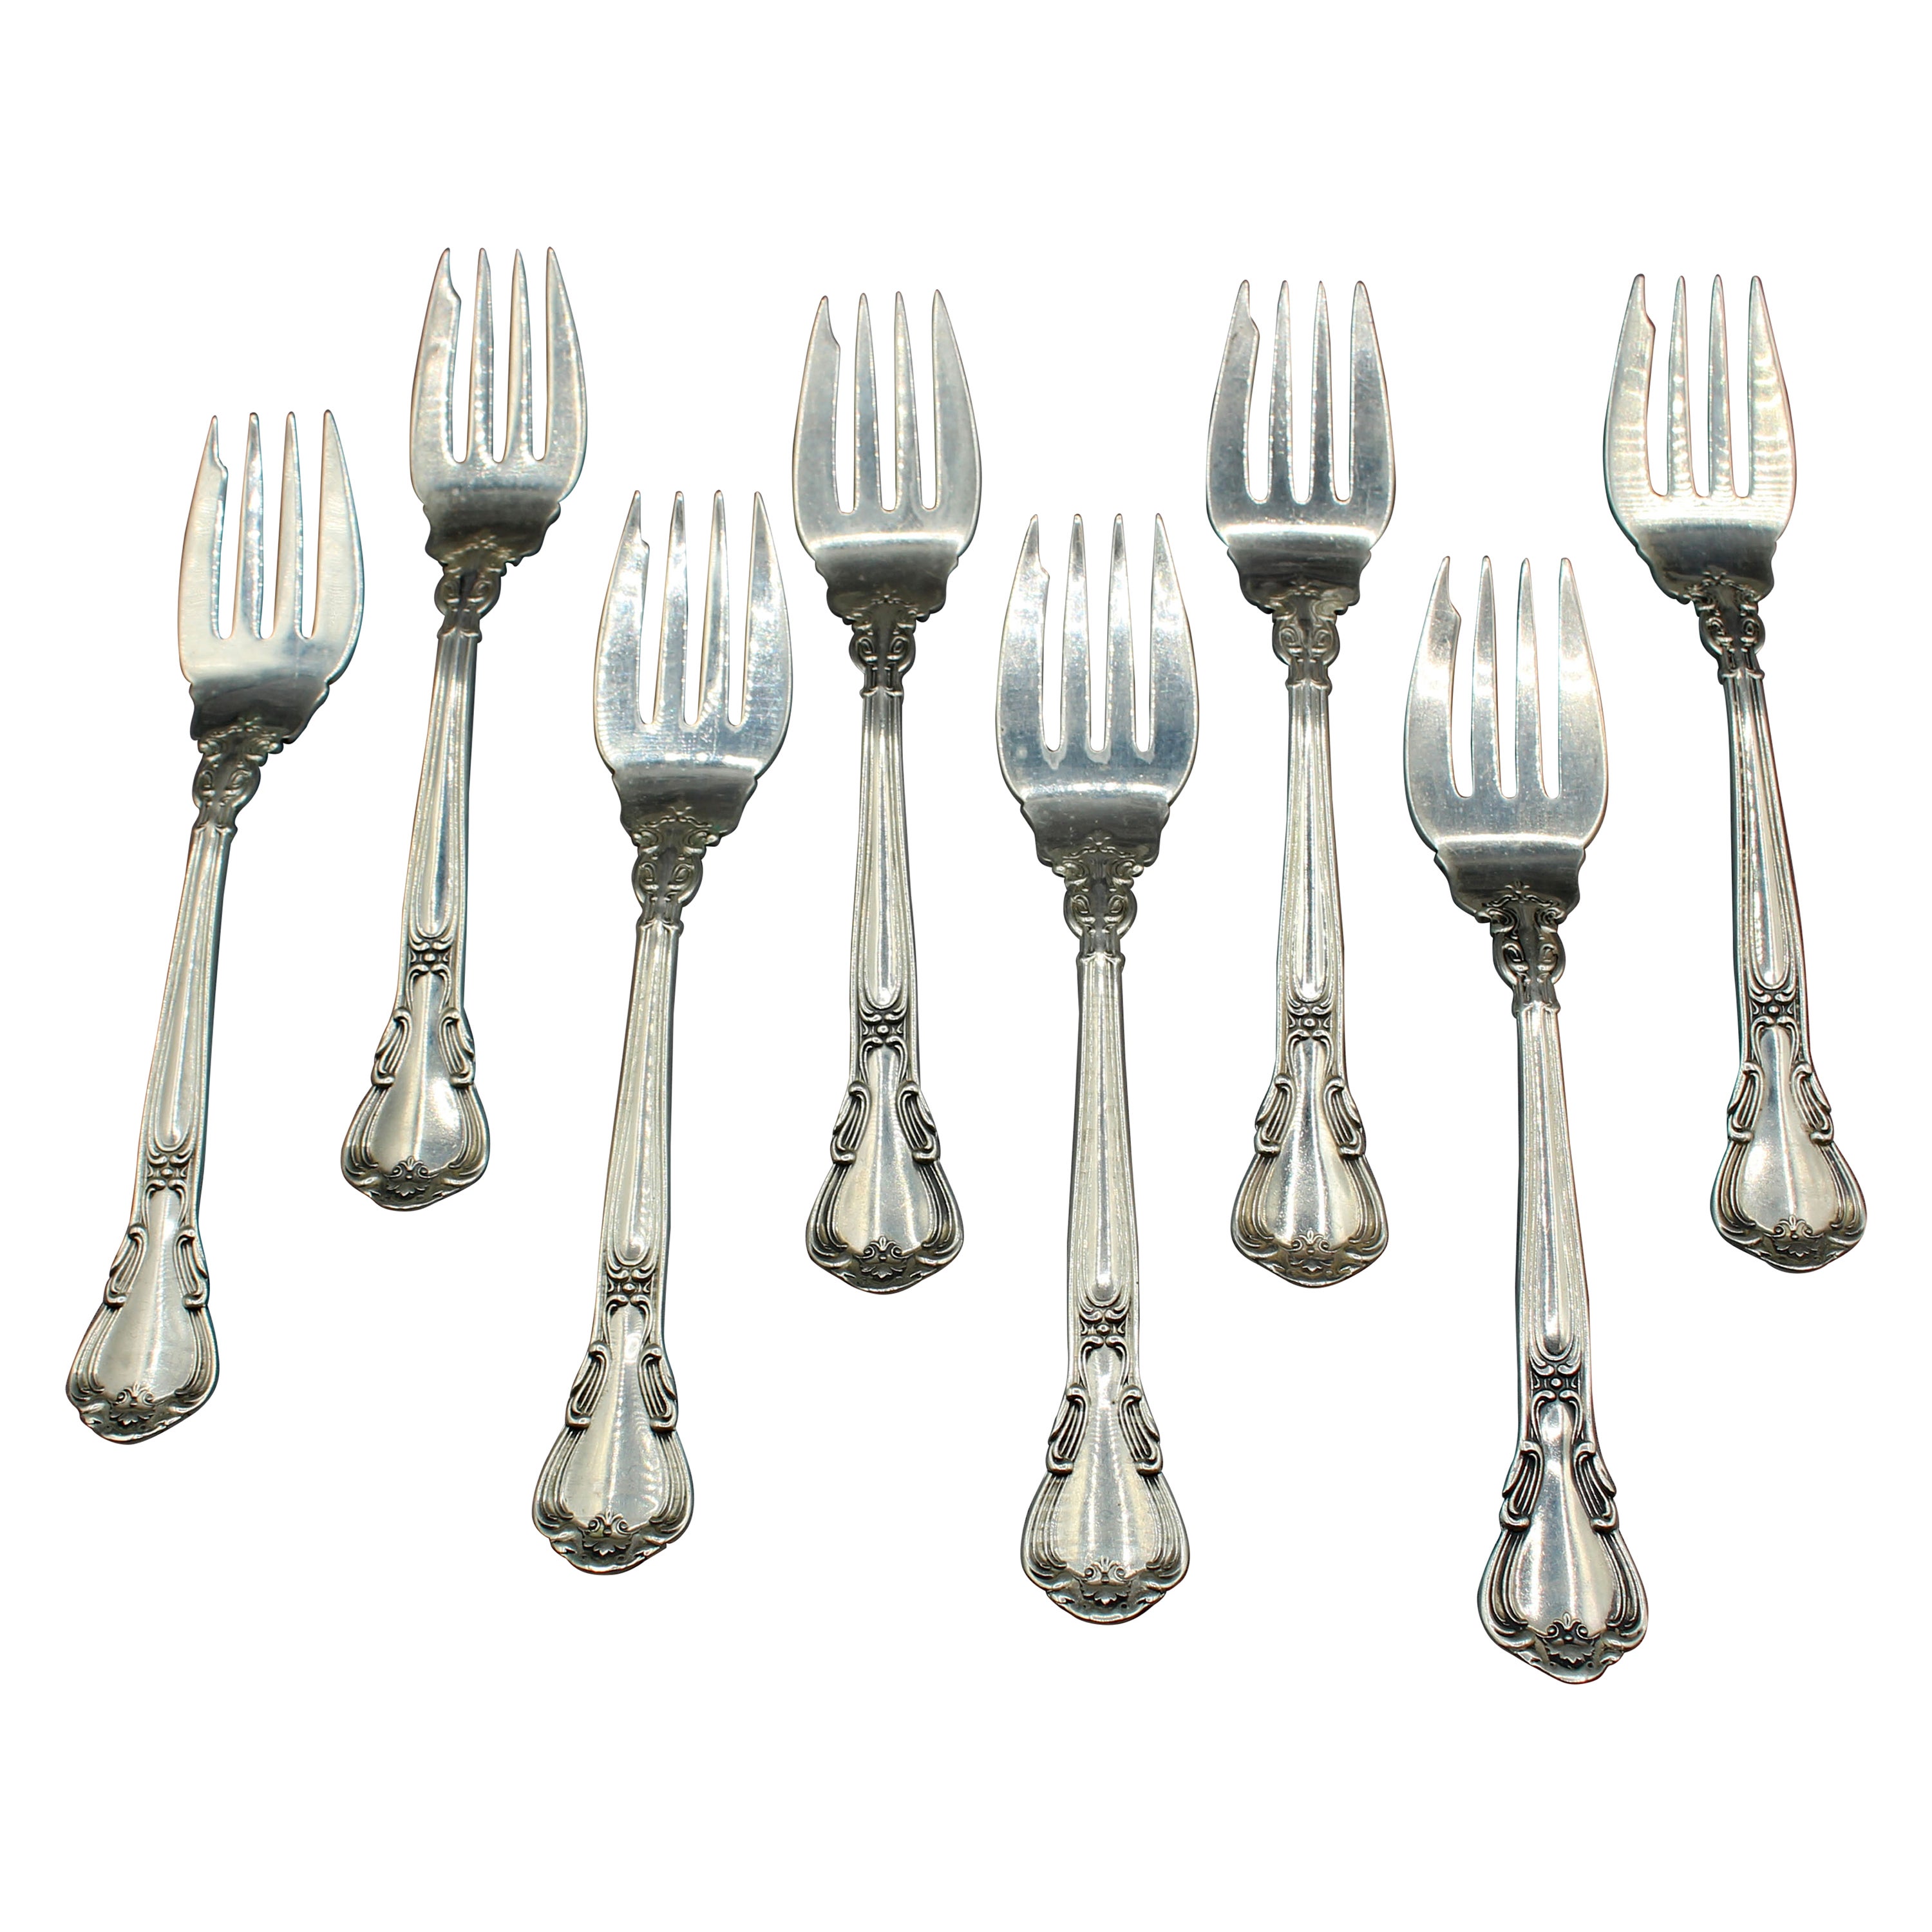 Set of 8 Chantilly Sterling Silver Salad or Dessert Forks by Gorham